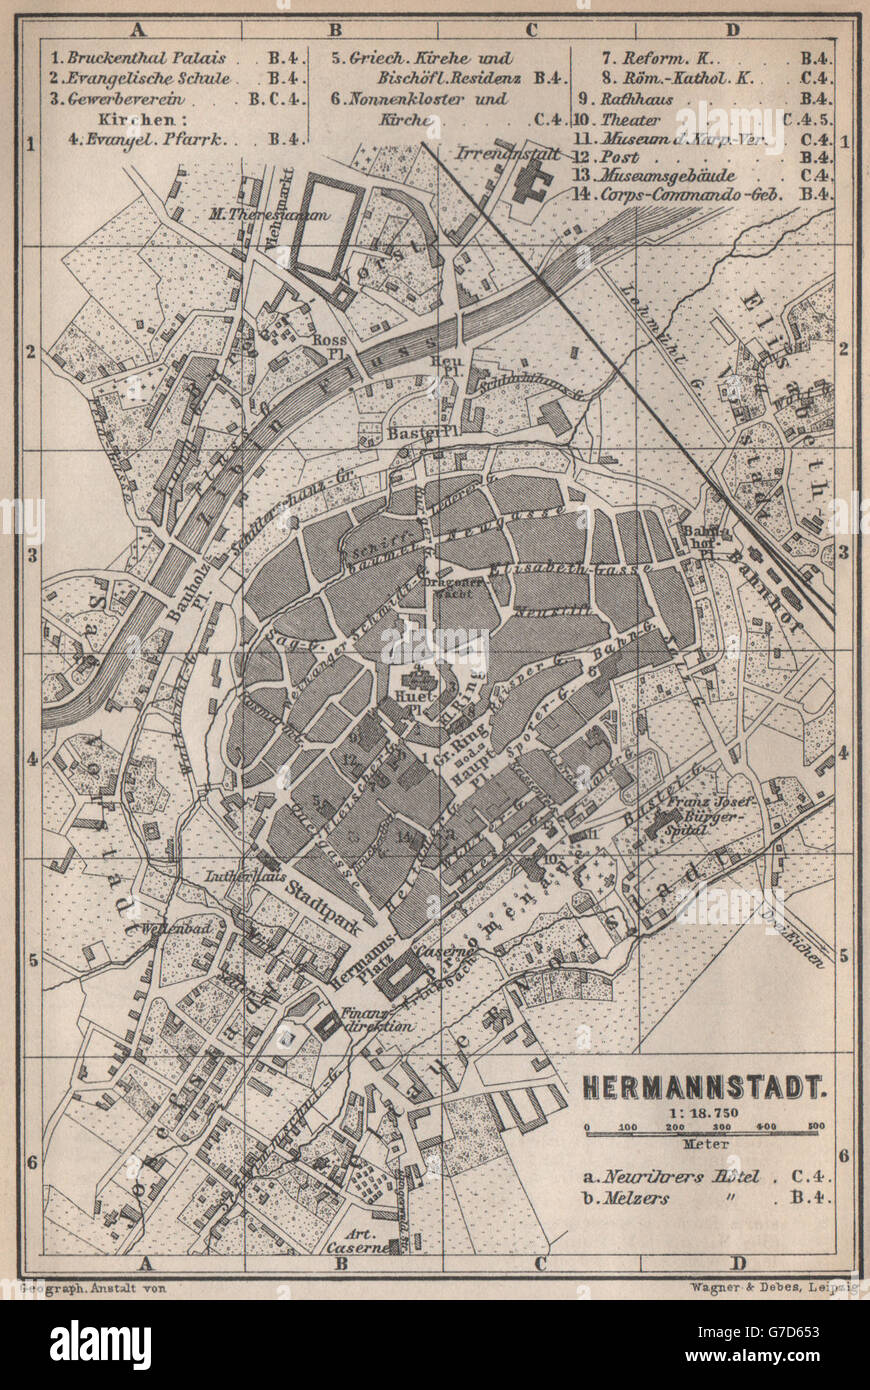 Sibiu Hermannstadt Romania - Baedeker 1896